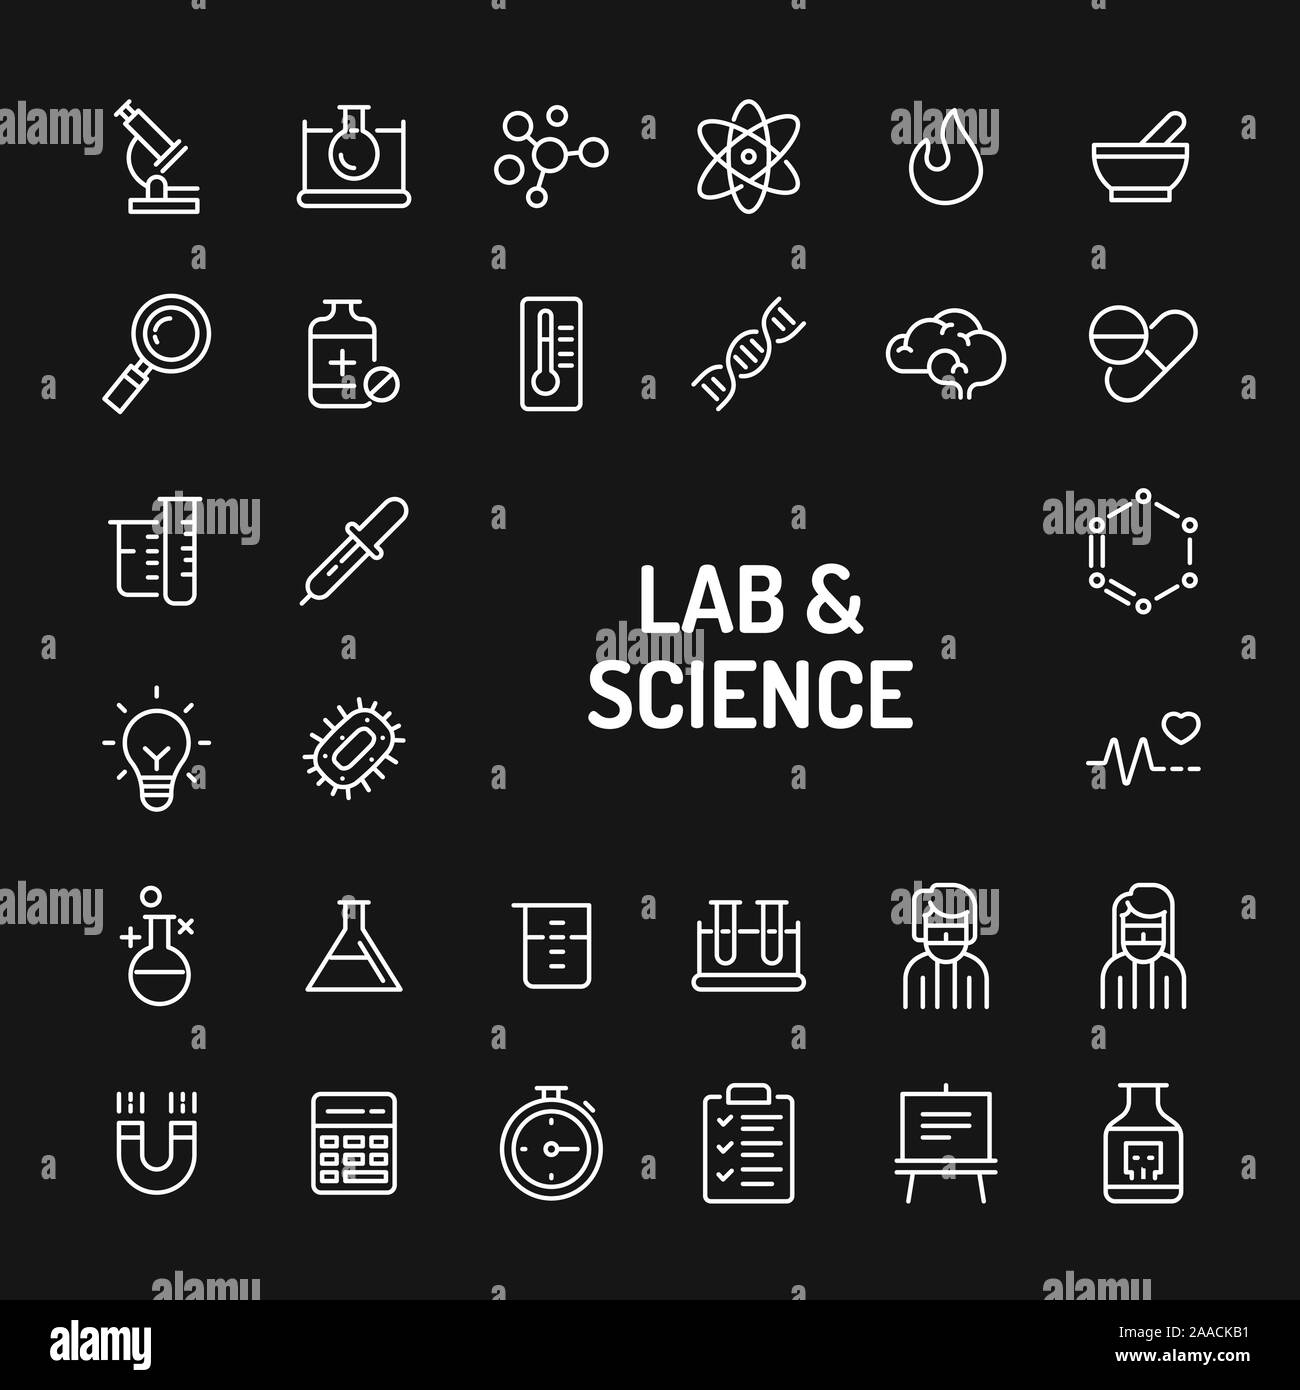 Iconos de líneas sencillas en blanco sobre fondo negro aislados relacionados con la ciencia de investigación, experimentos de laboratorio y equipos. Signos y símbolos vectoriales co Ilustración del Vector